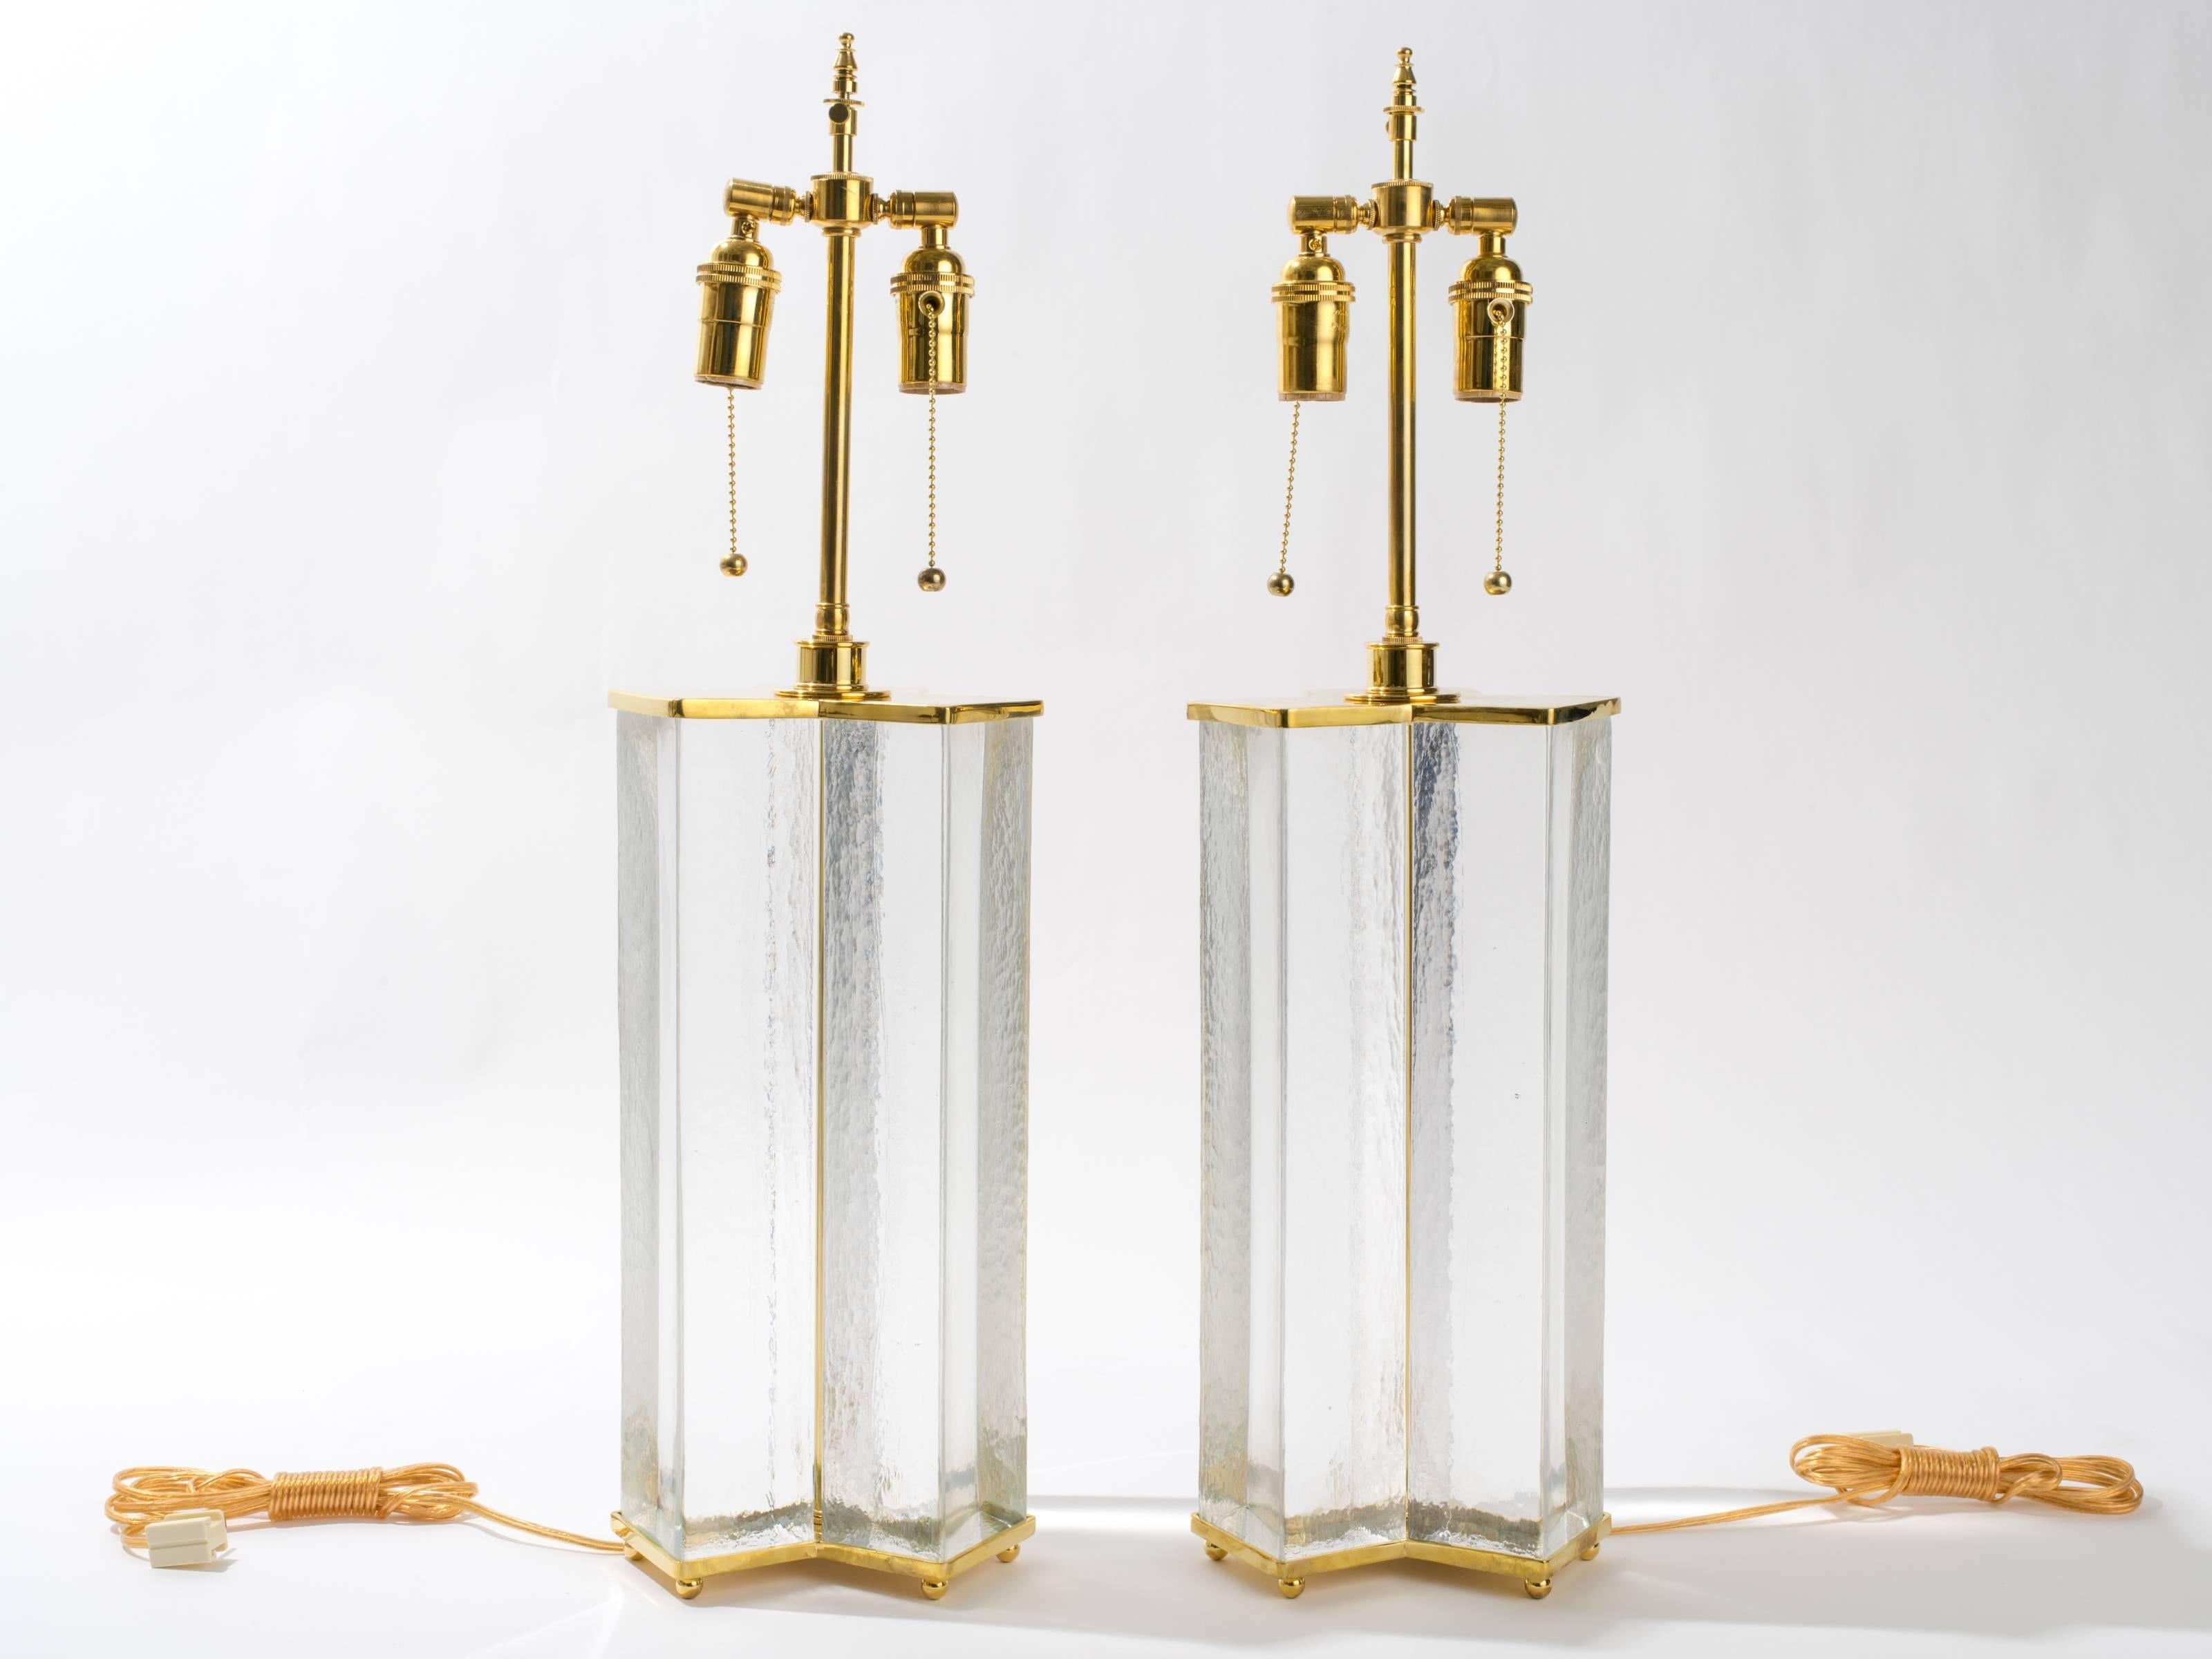 Lampes de table en verre transparent et laiton massif.
Doubles douilles de chaîne de traction à hauteur réglable.